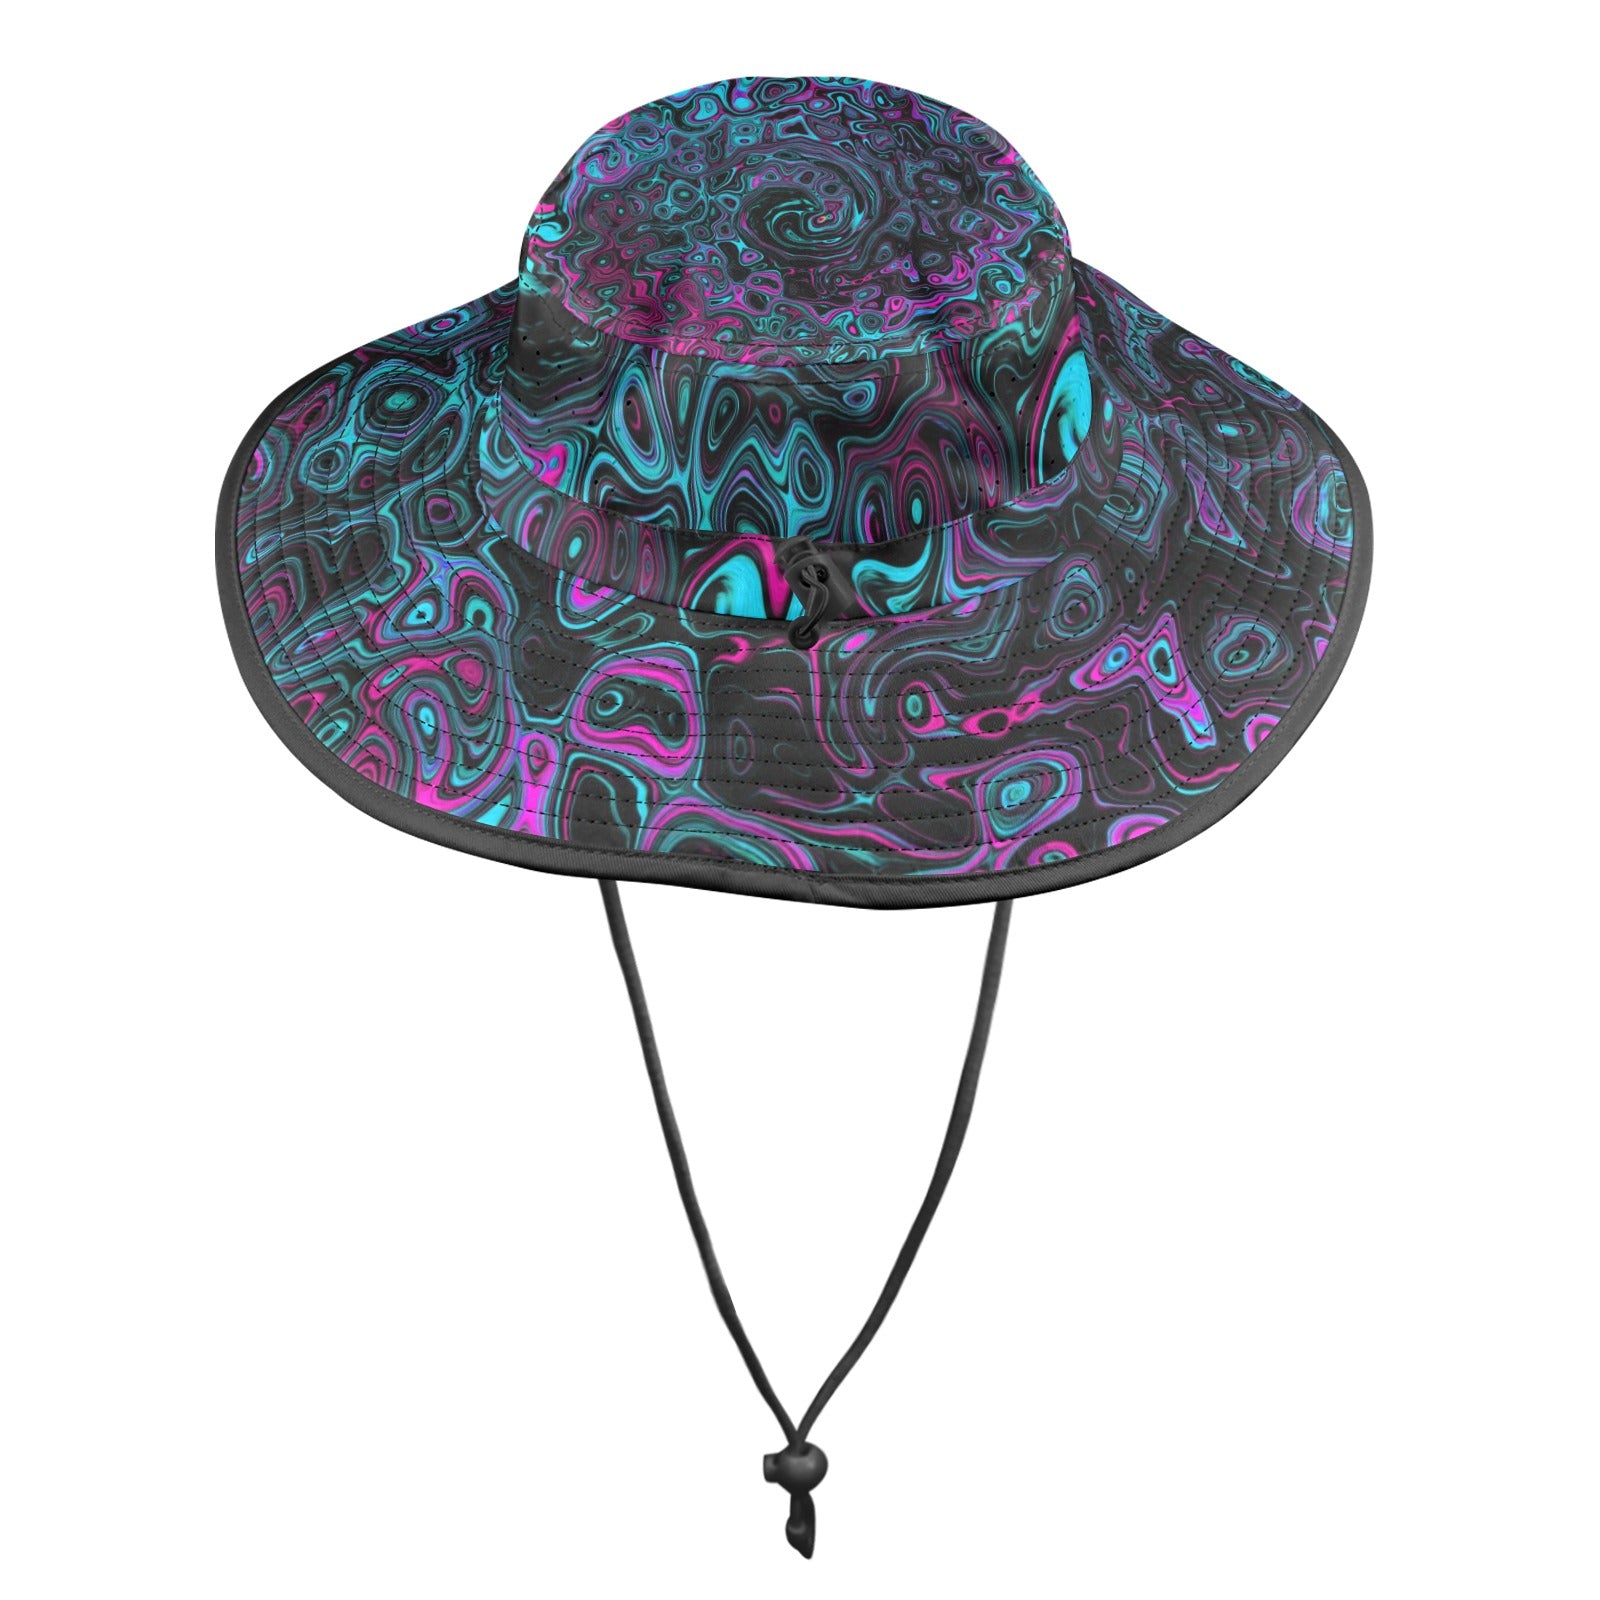 Wide Brim Sun Hat - Retro Aqua Magenta and Black Abstract Swirl